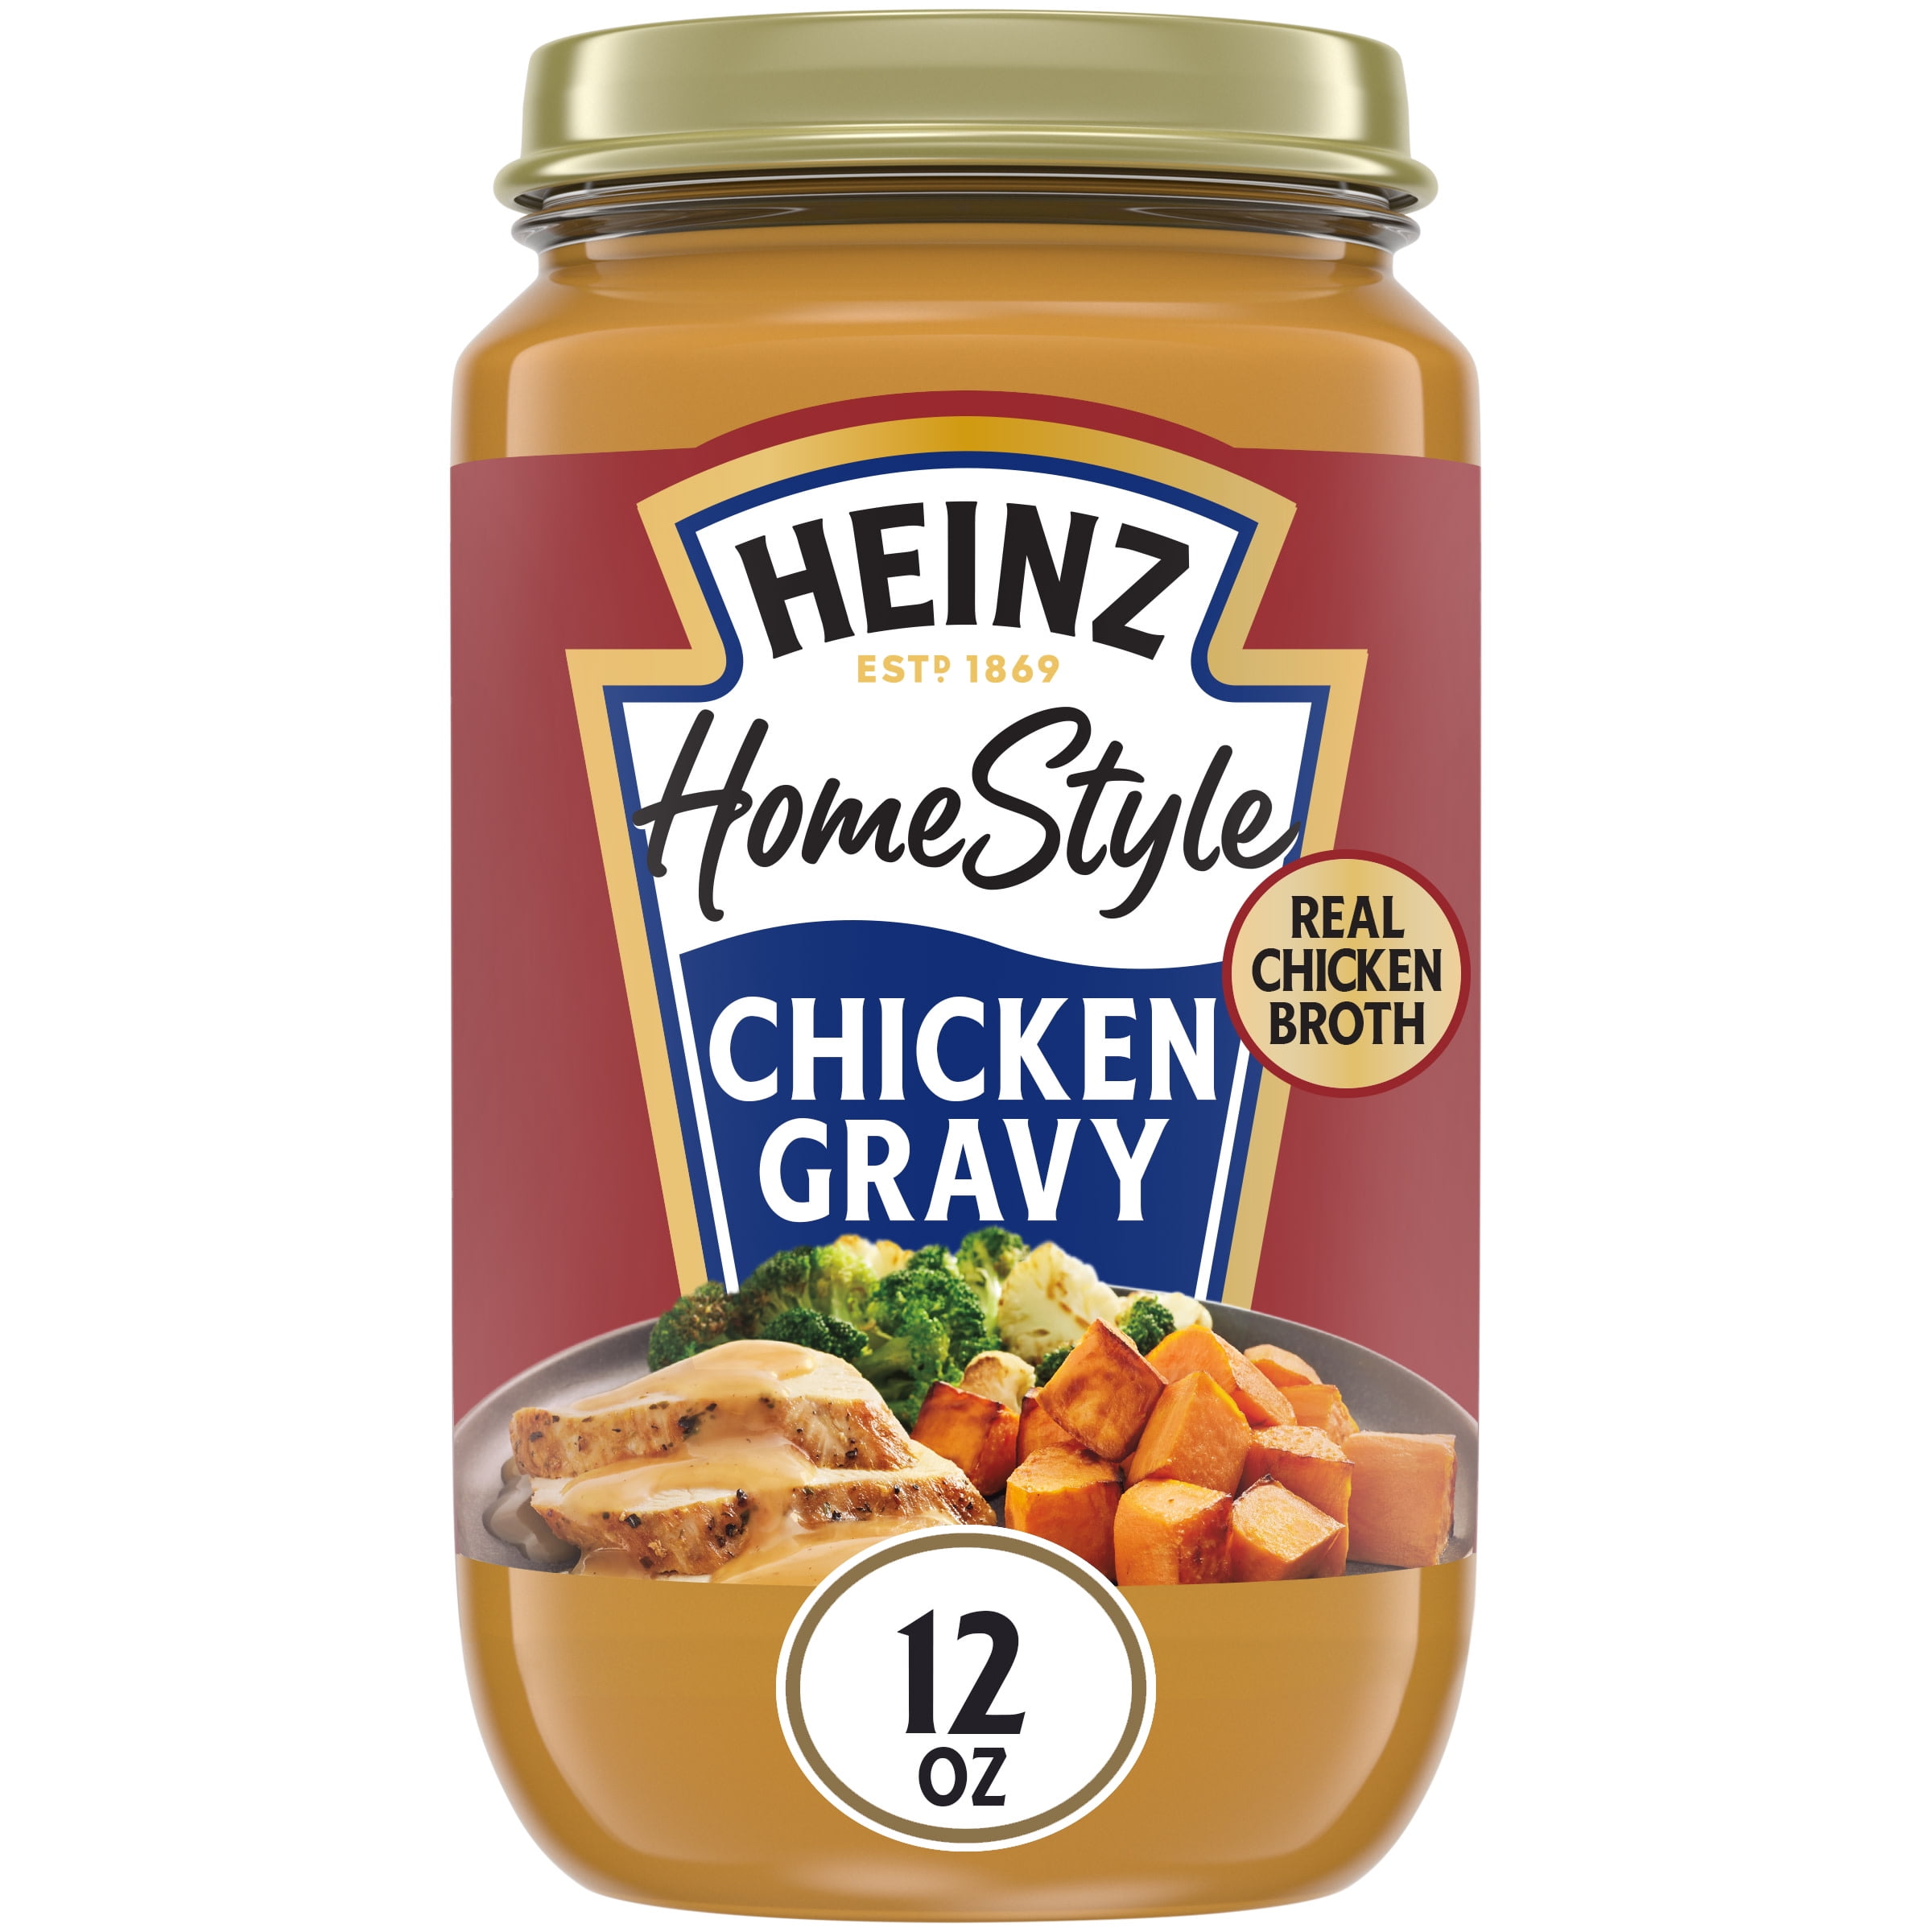 Heinz HomeStyle Classic Chicken Gravy, 12 oz Jar